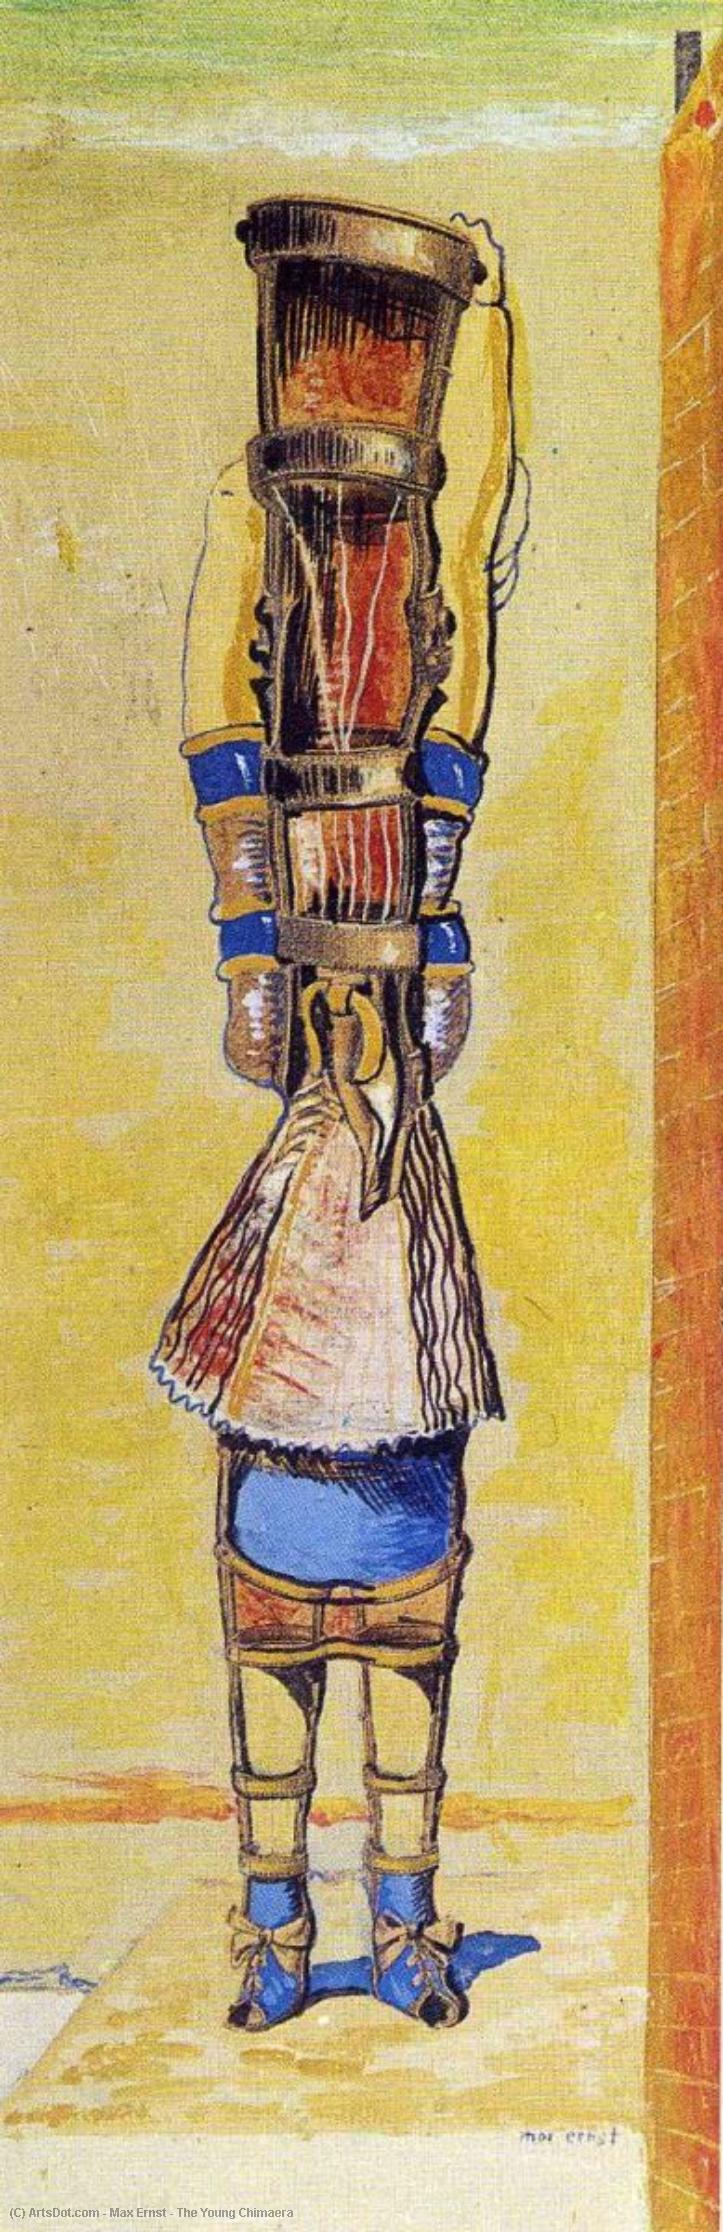 WikiOO.org - Enciklopedija likovnih umjetnosti - Slikarstvo, umjetnička djela Max Ernst - The Young Chimaera